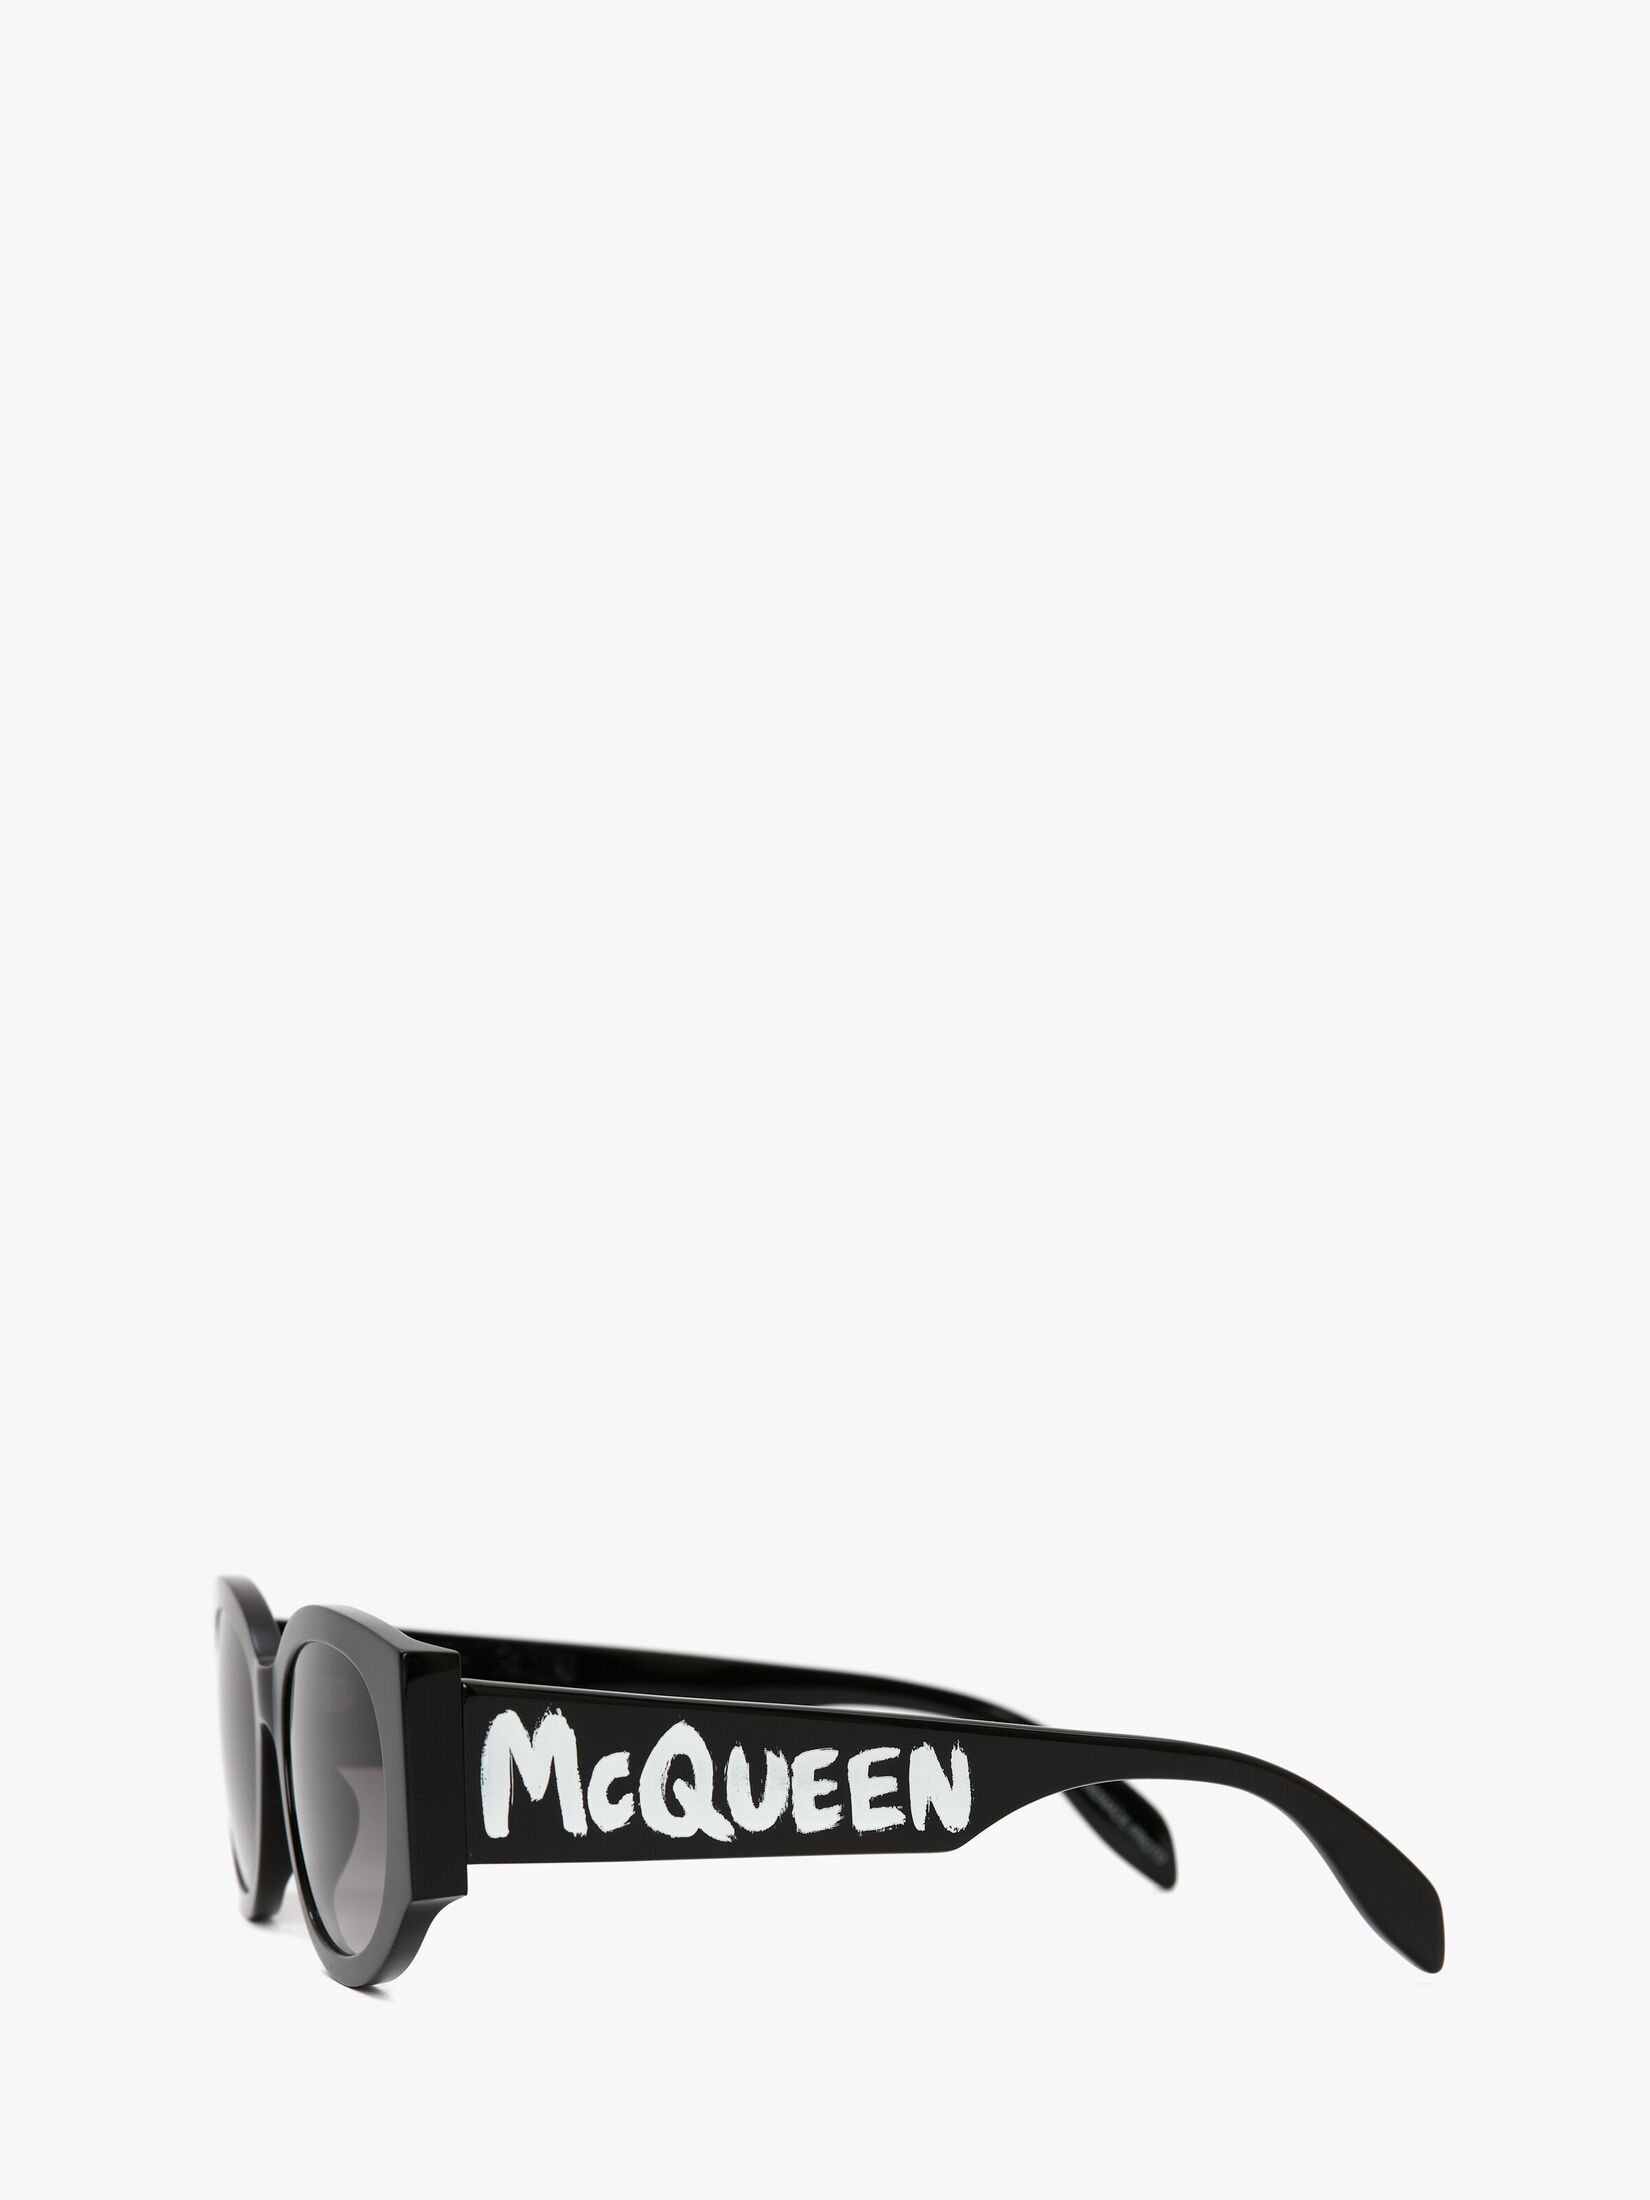 Ovale Sonnenbrille mit McQueen-Graffiti-Motiv